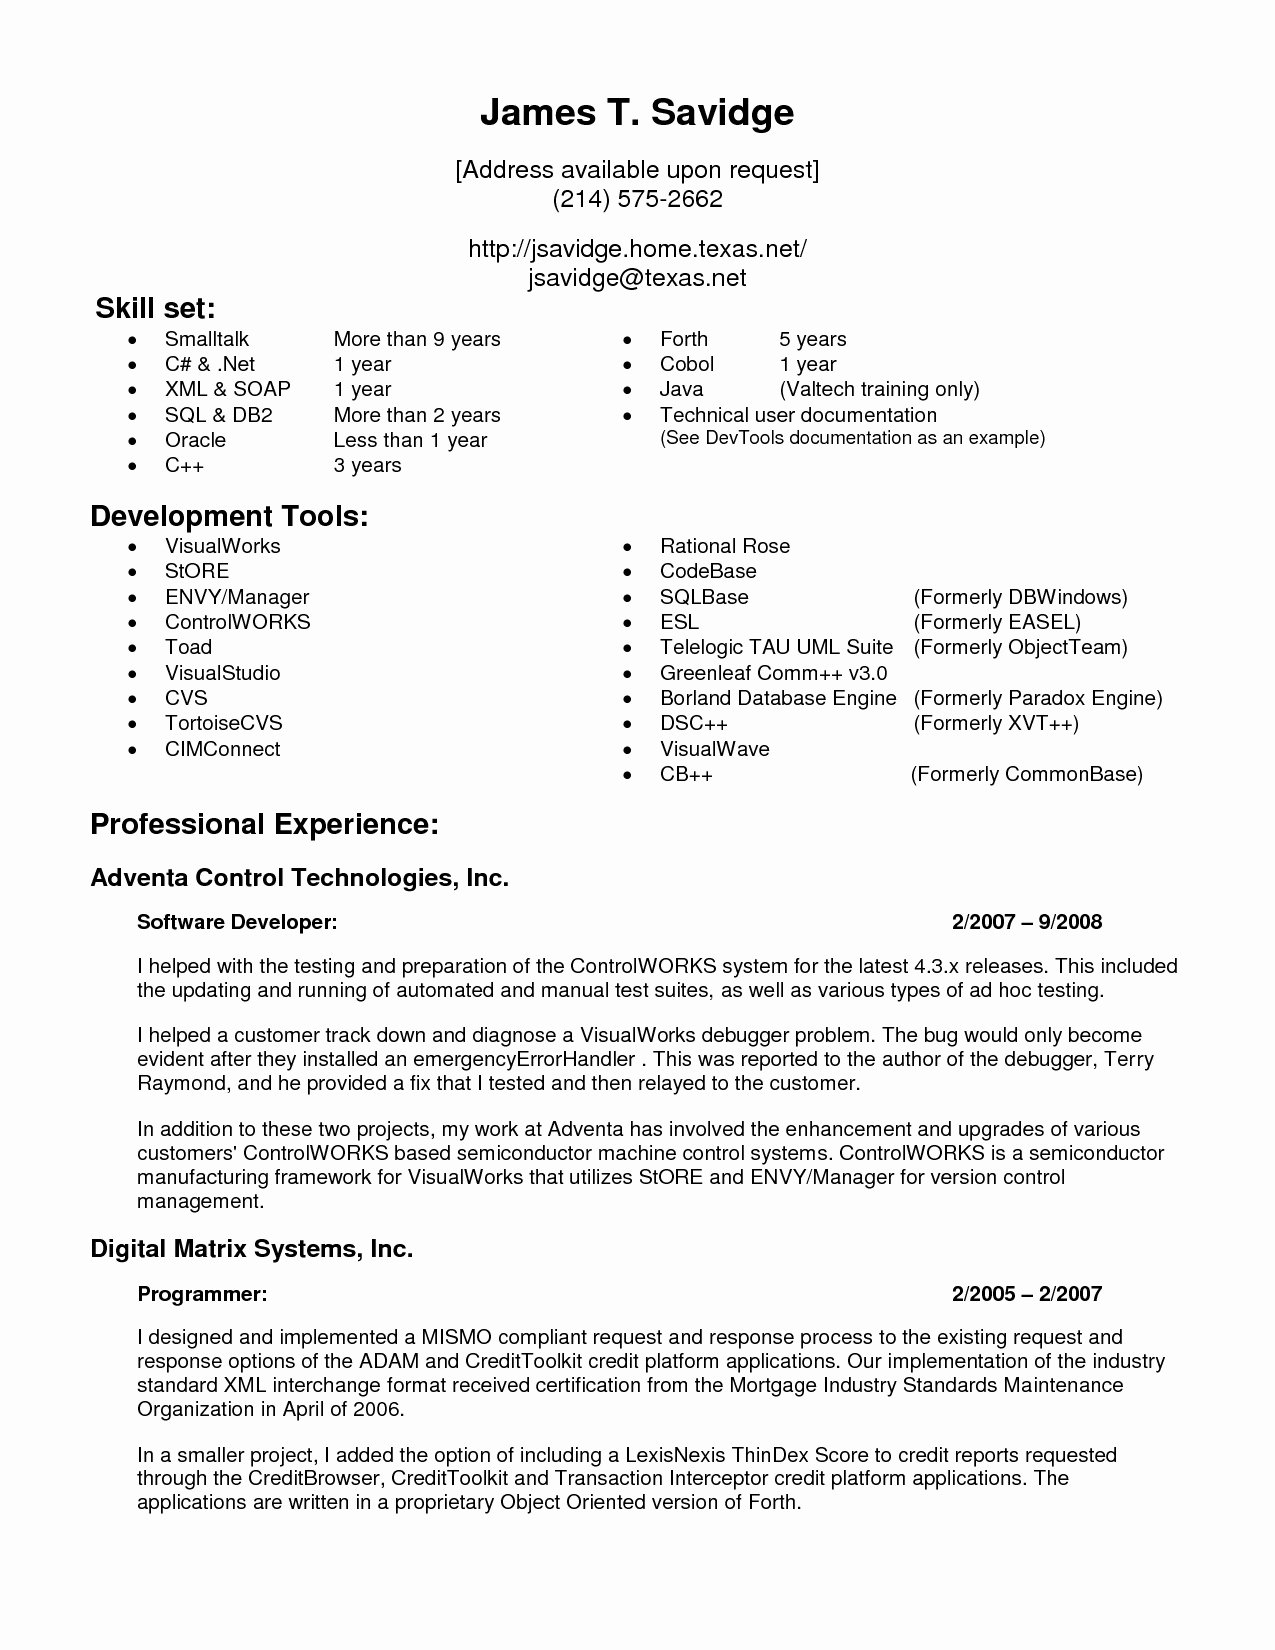 E Year Experience Resume format for Net Developer